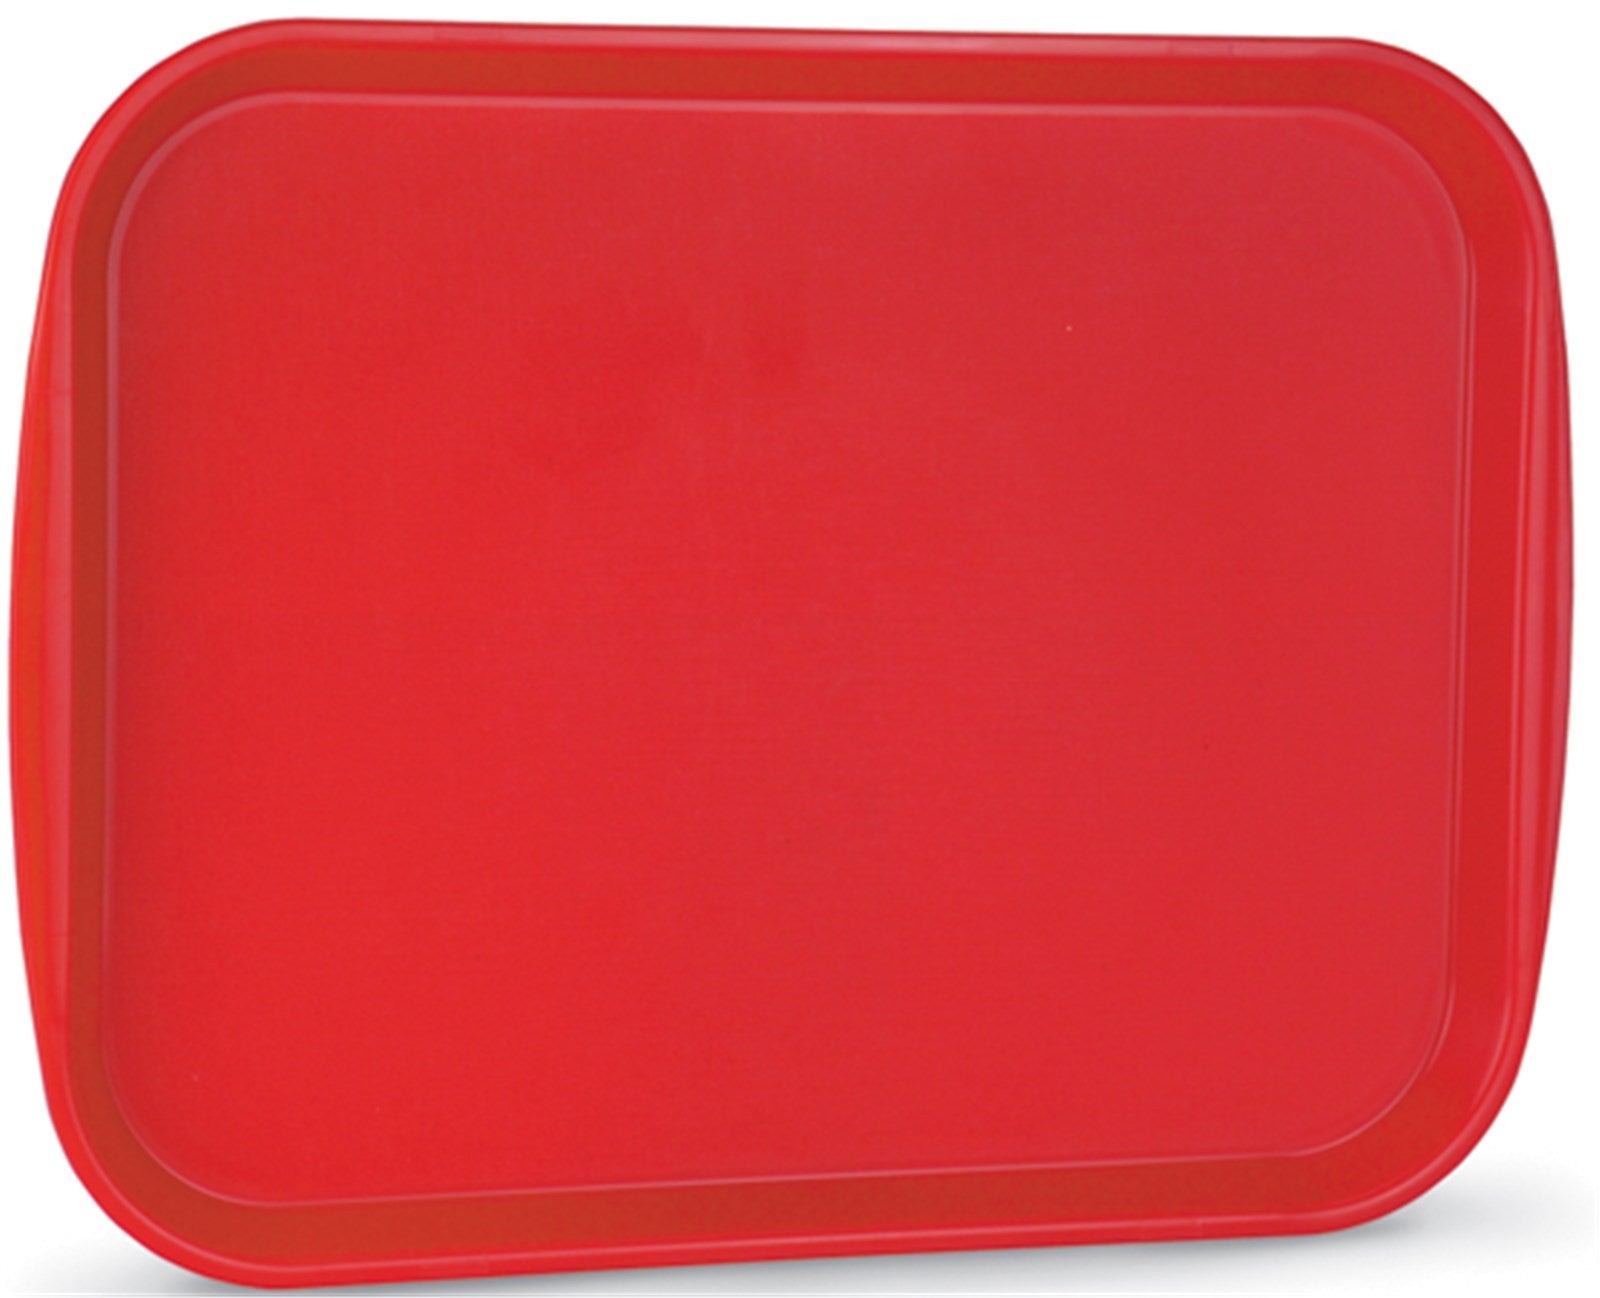 Fast Food Tablett Rot 35.6 x 45.7cm in Rot präsentiert im Onlineshop von KAQTU Design AG. Tablett ist von Vollrath